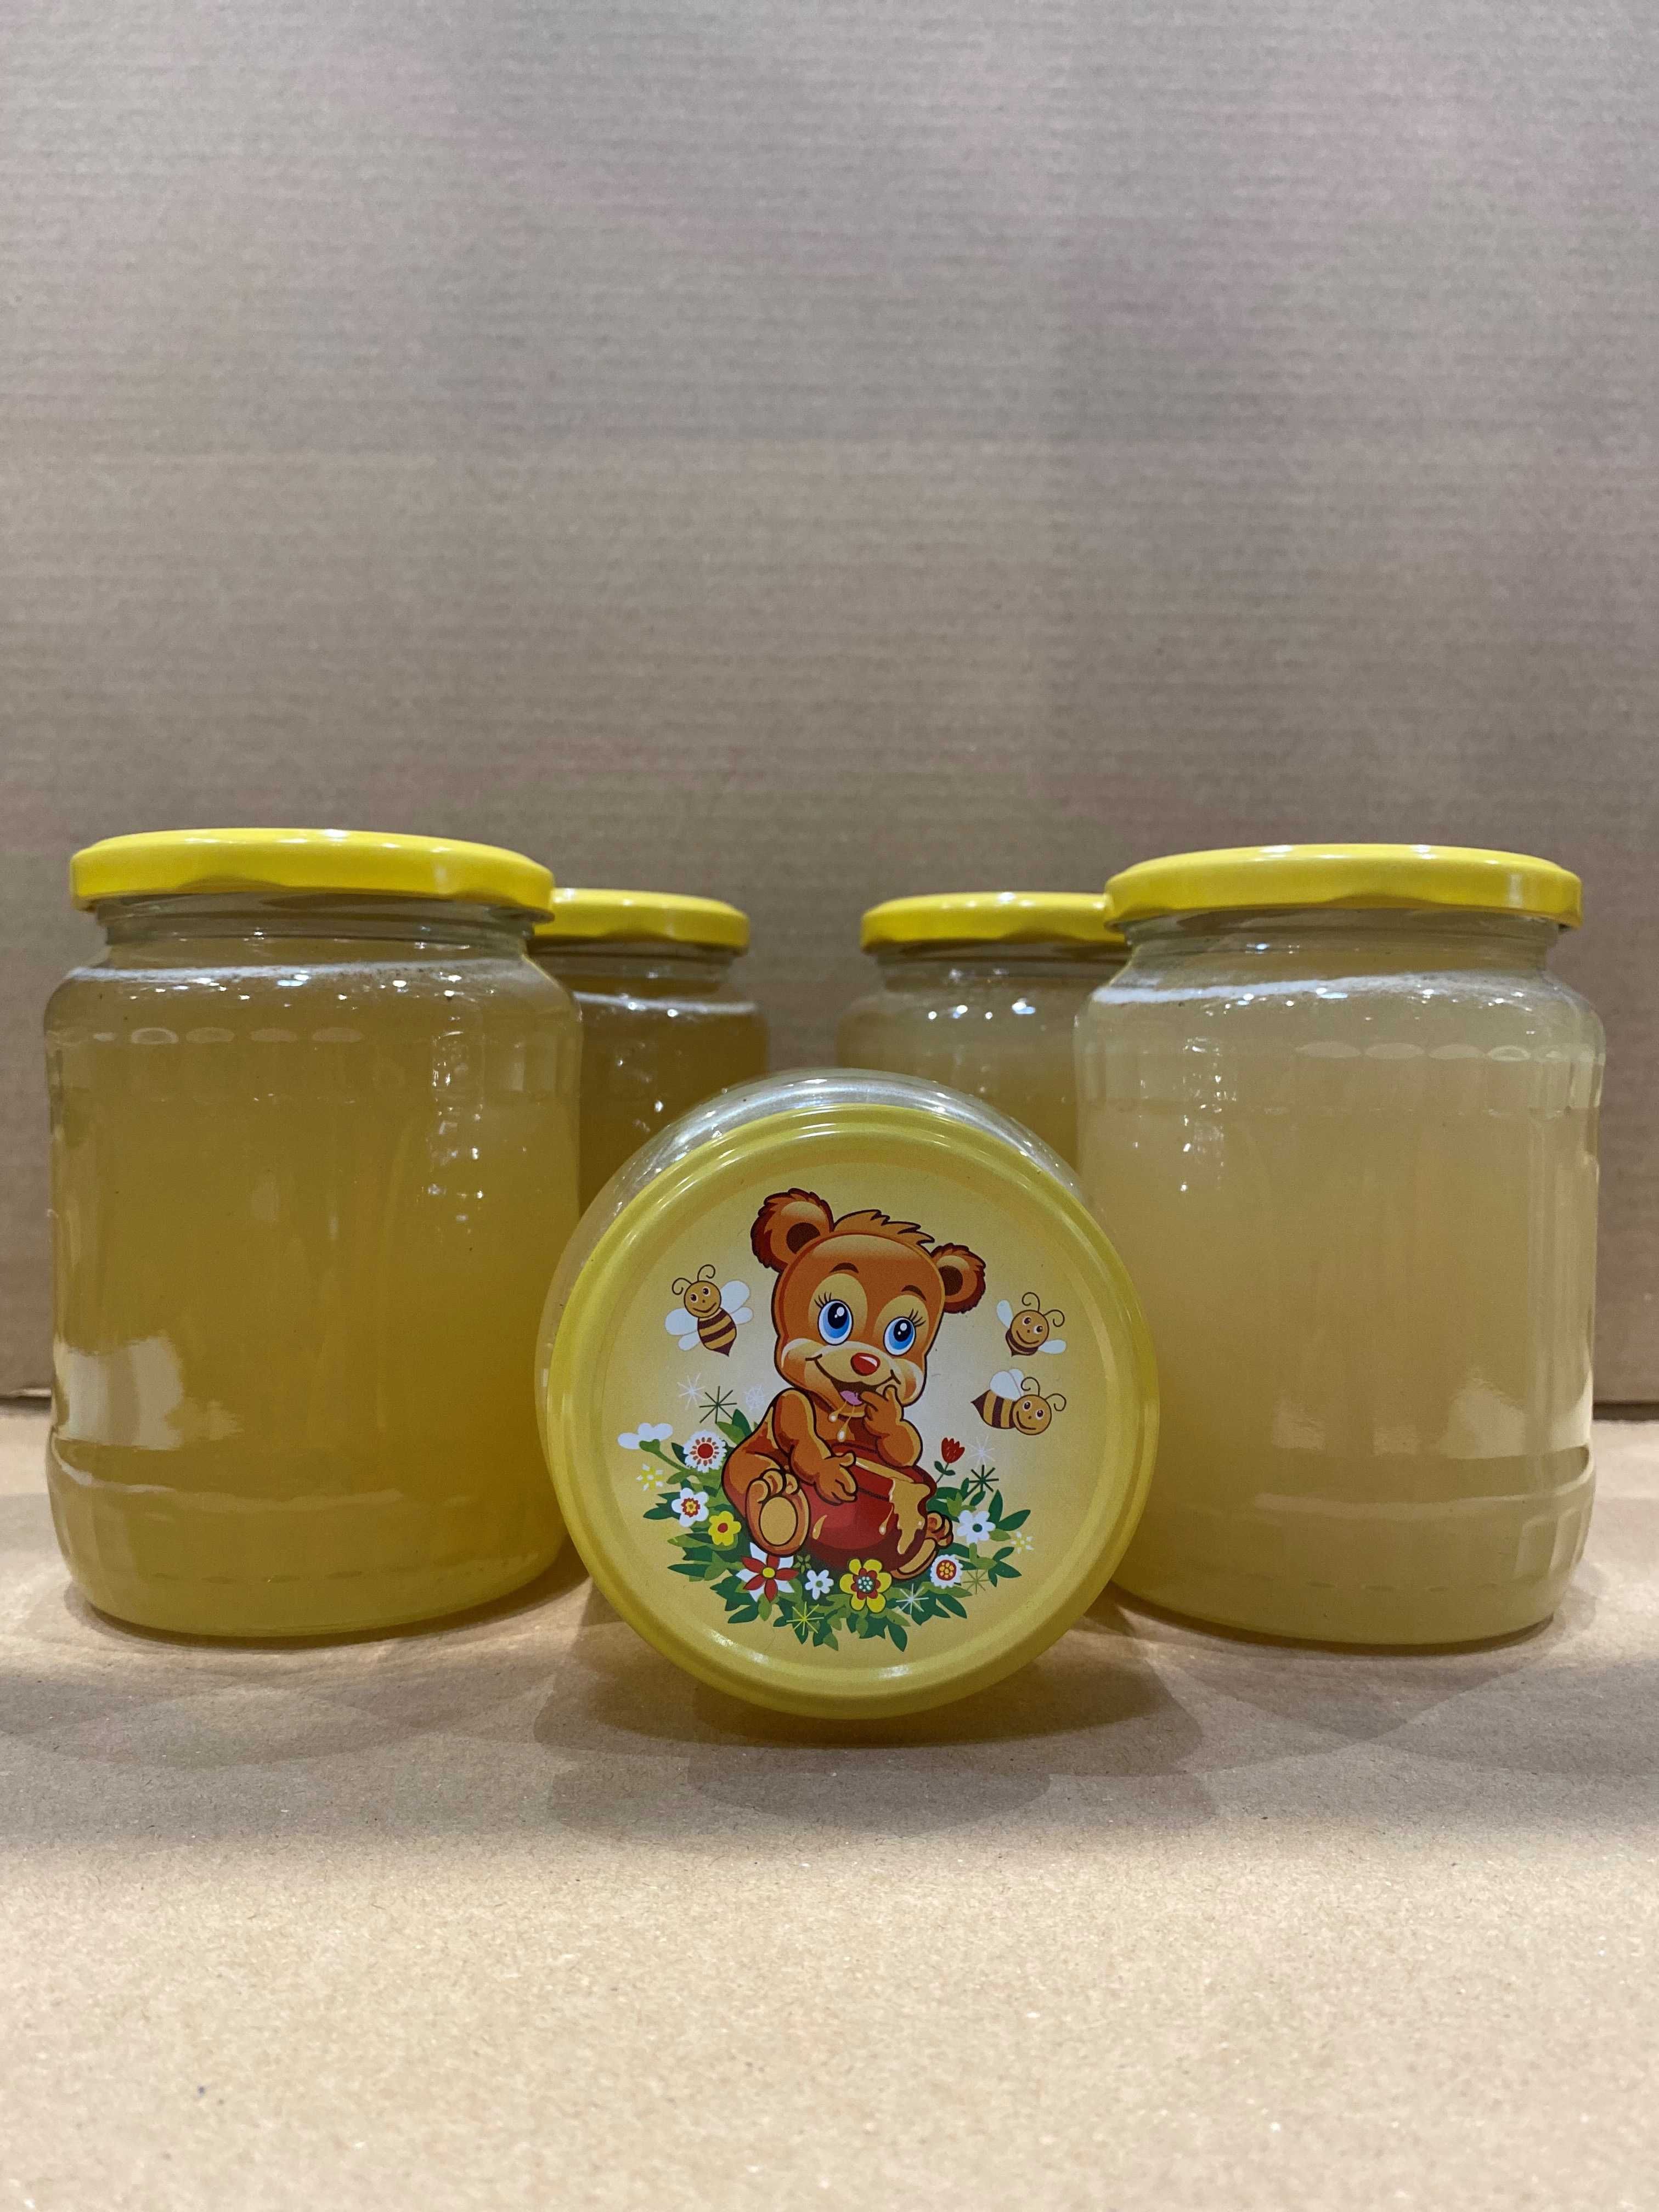 Vand miere de albine 100% naturala , rapita si poliflora